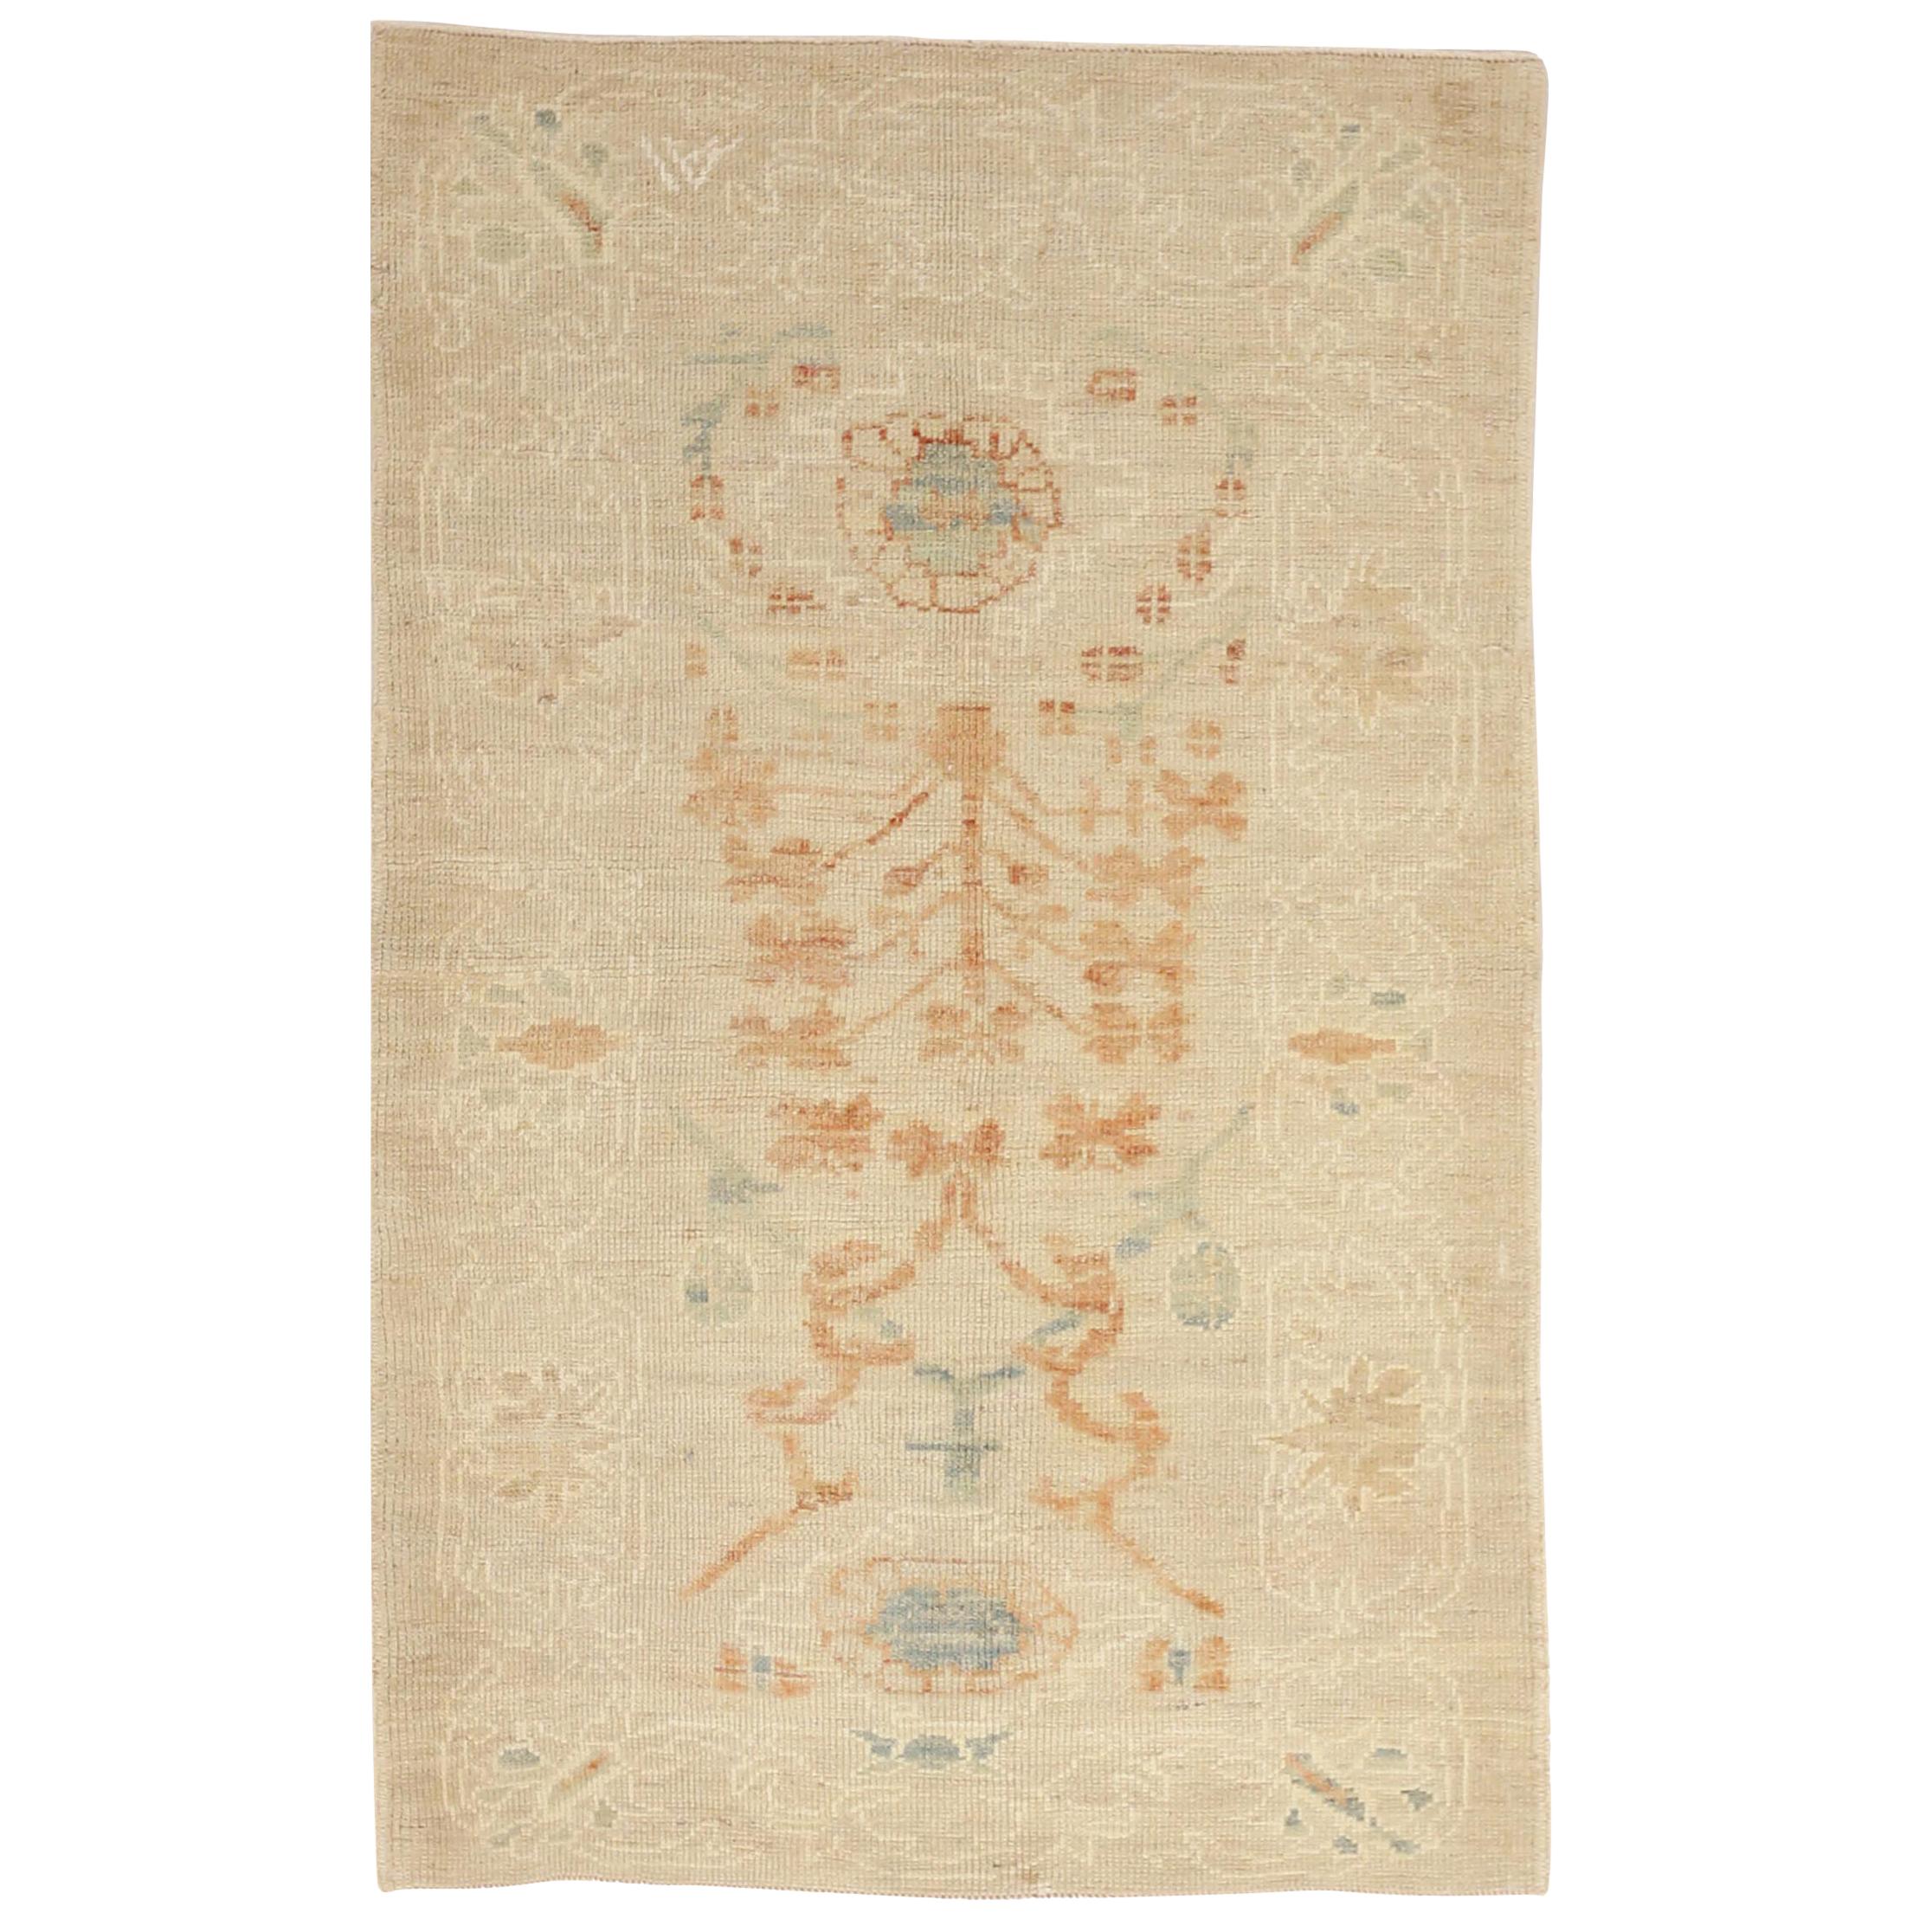 Nouveau tapis persan Oushak avec détails floraux rouille et ivoire